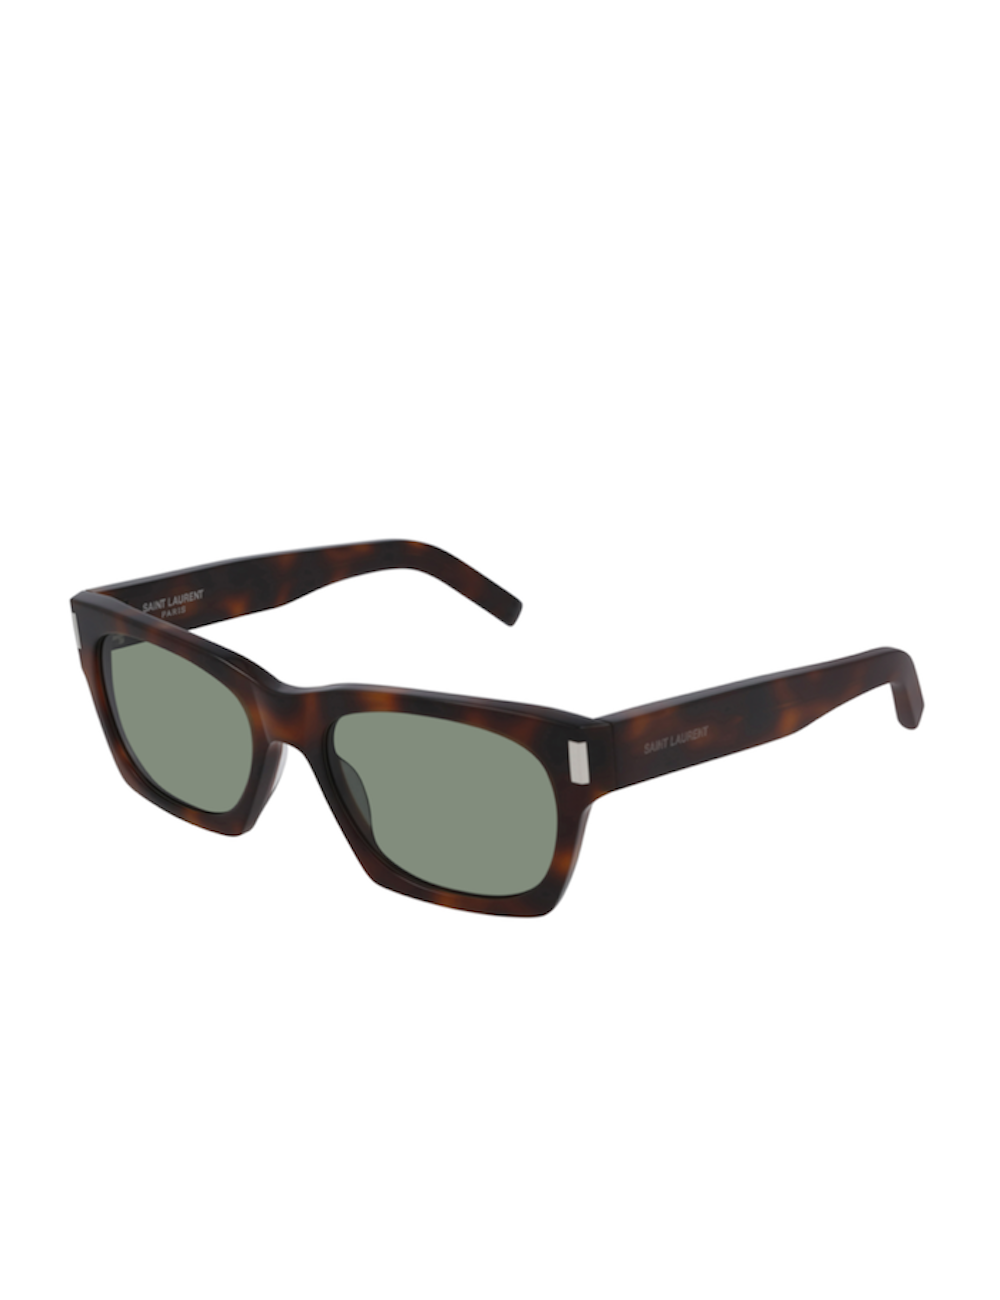 Sunglasses Collection for Men, Saint Laurent